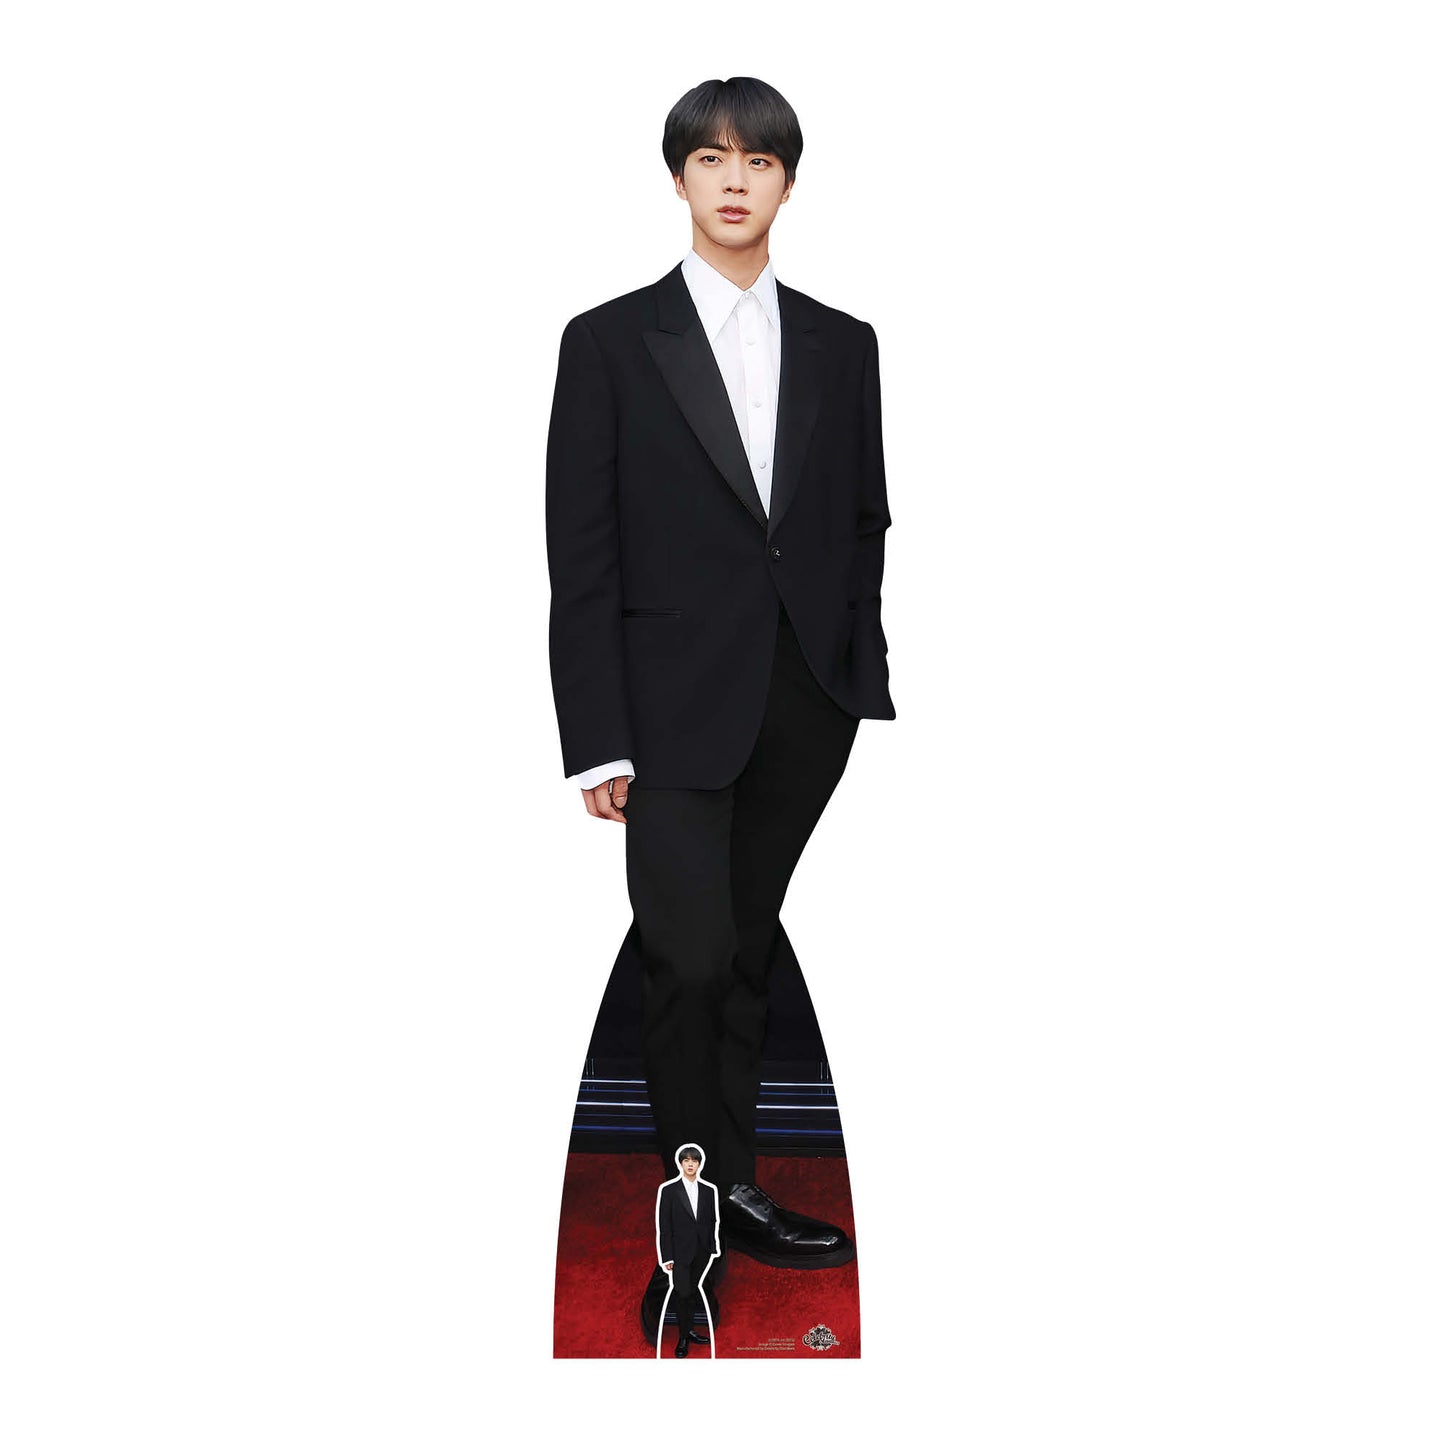 Jin  Bangtan Boys Kim Seok-jin BTS Cardboard Cutout MyCardboardCutout